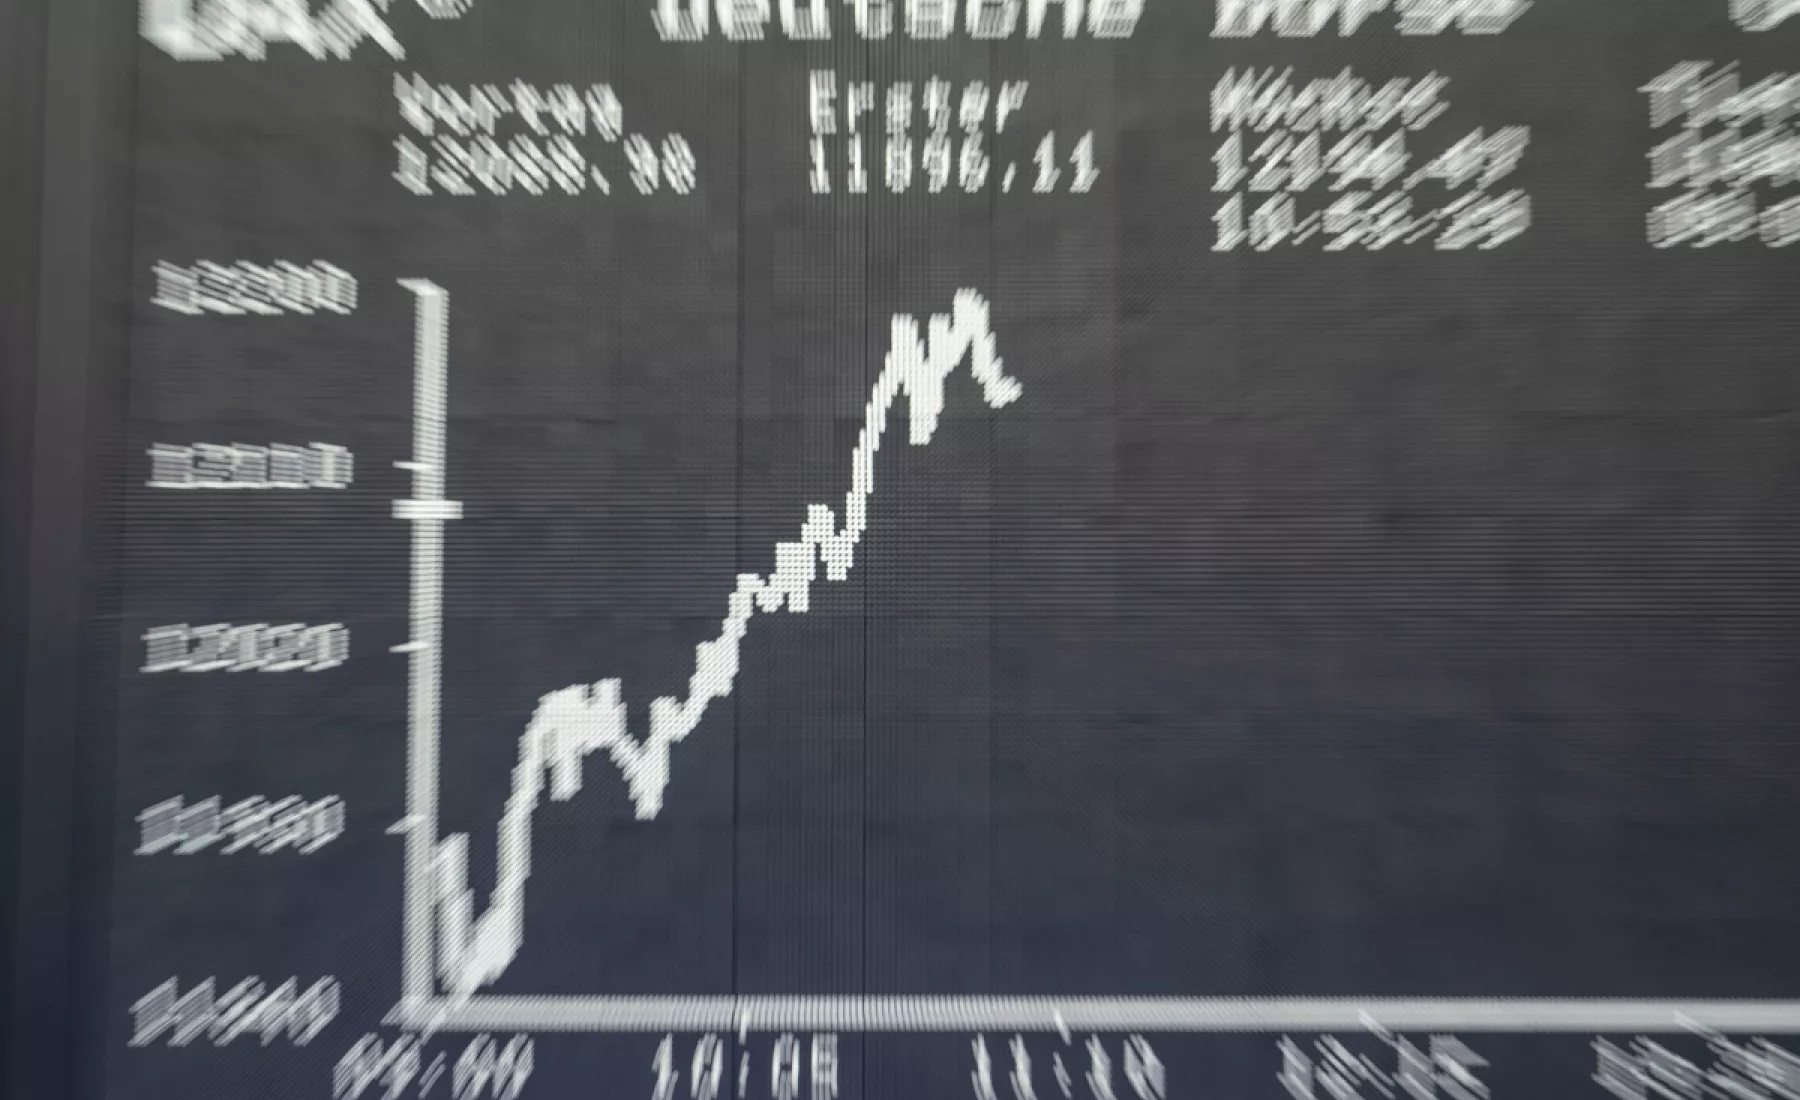 Symbolbild: Dax-Kurve auf einem Bildschirm in der Frankfurter Börse